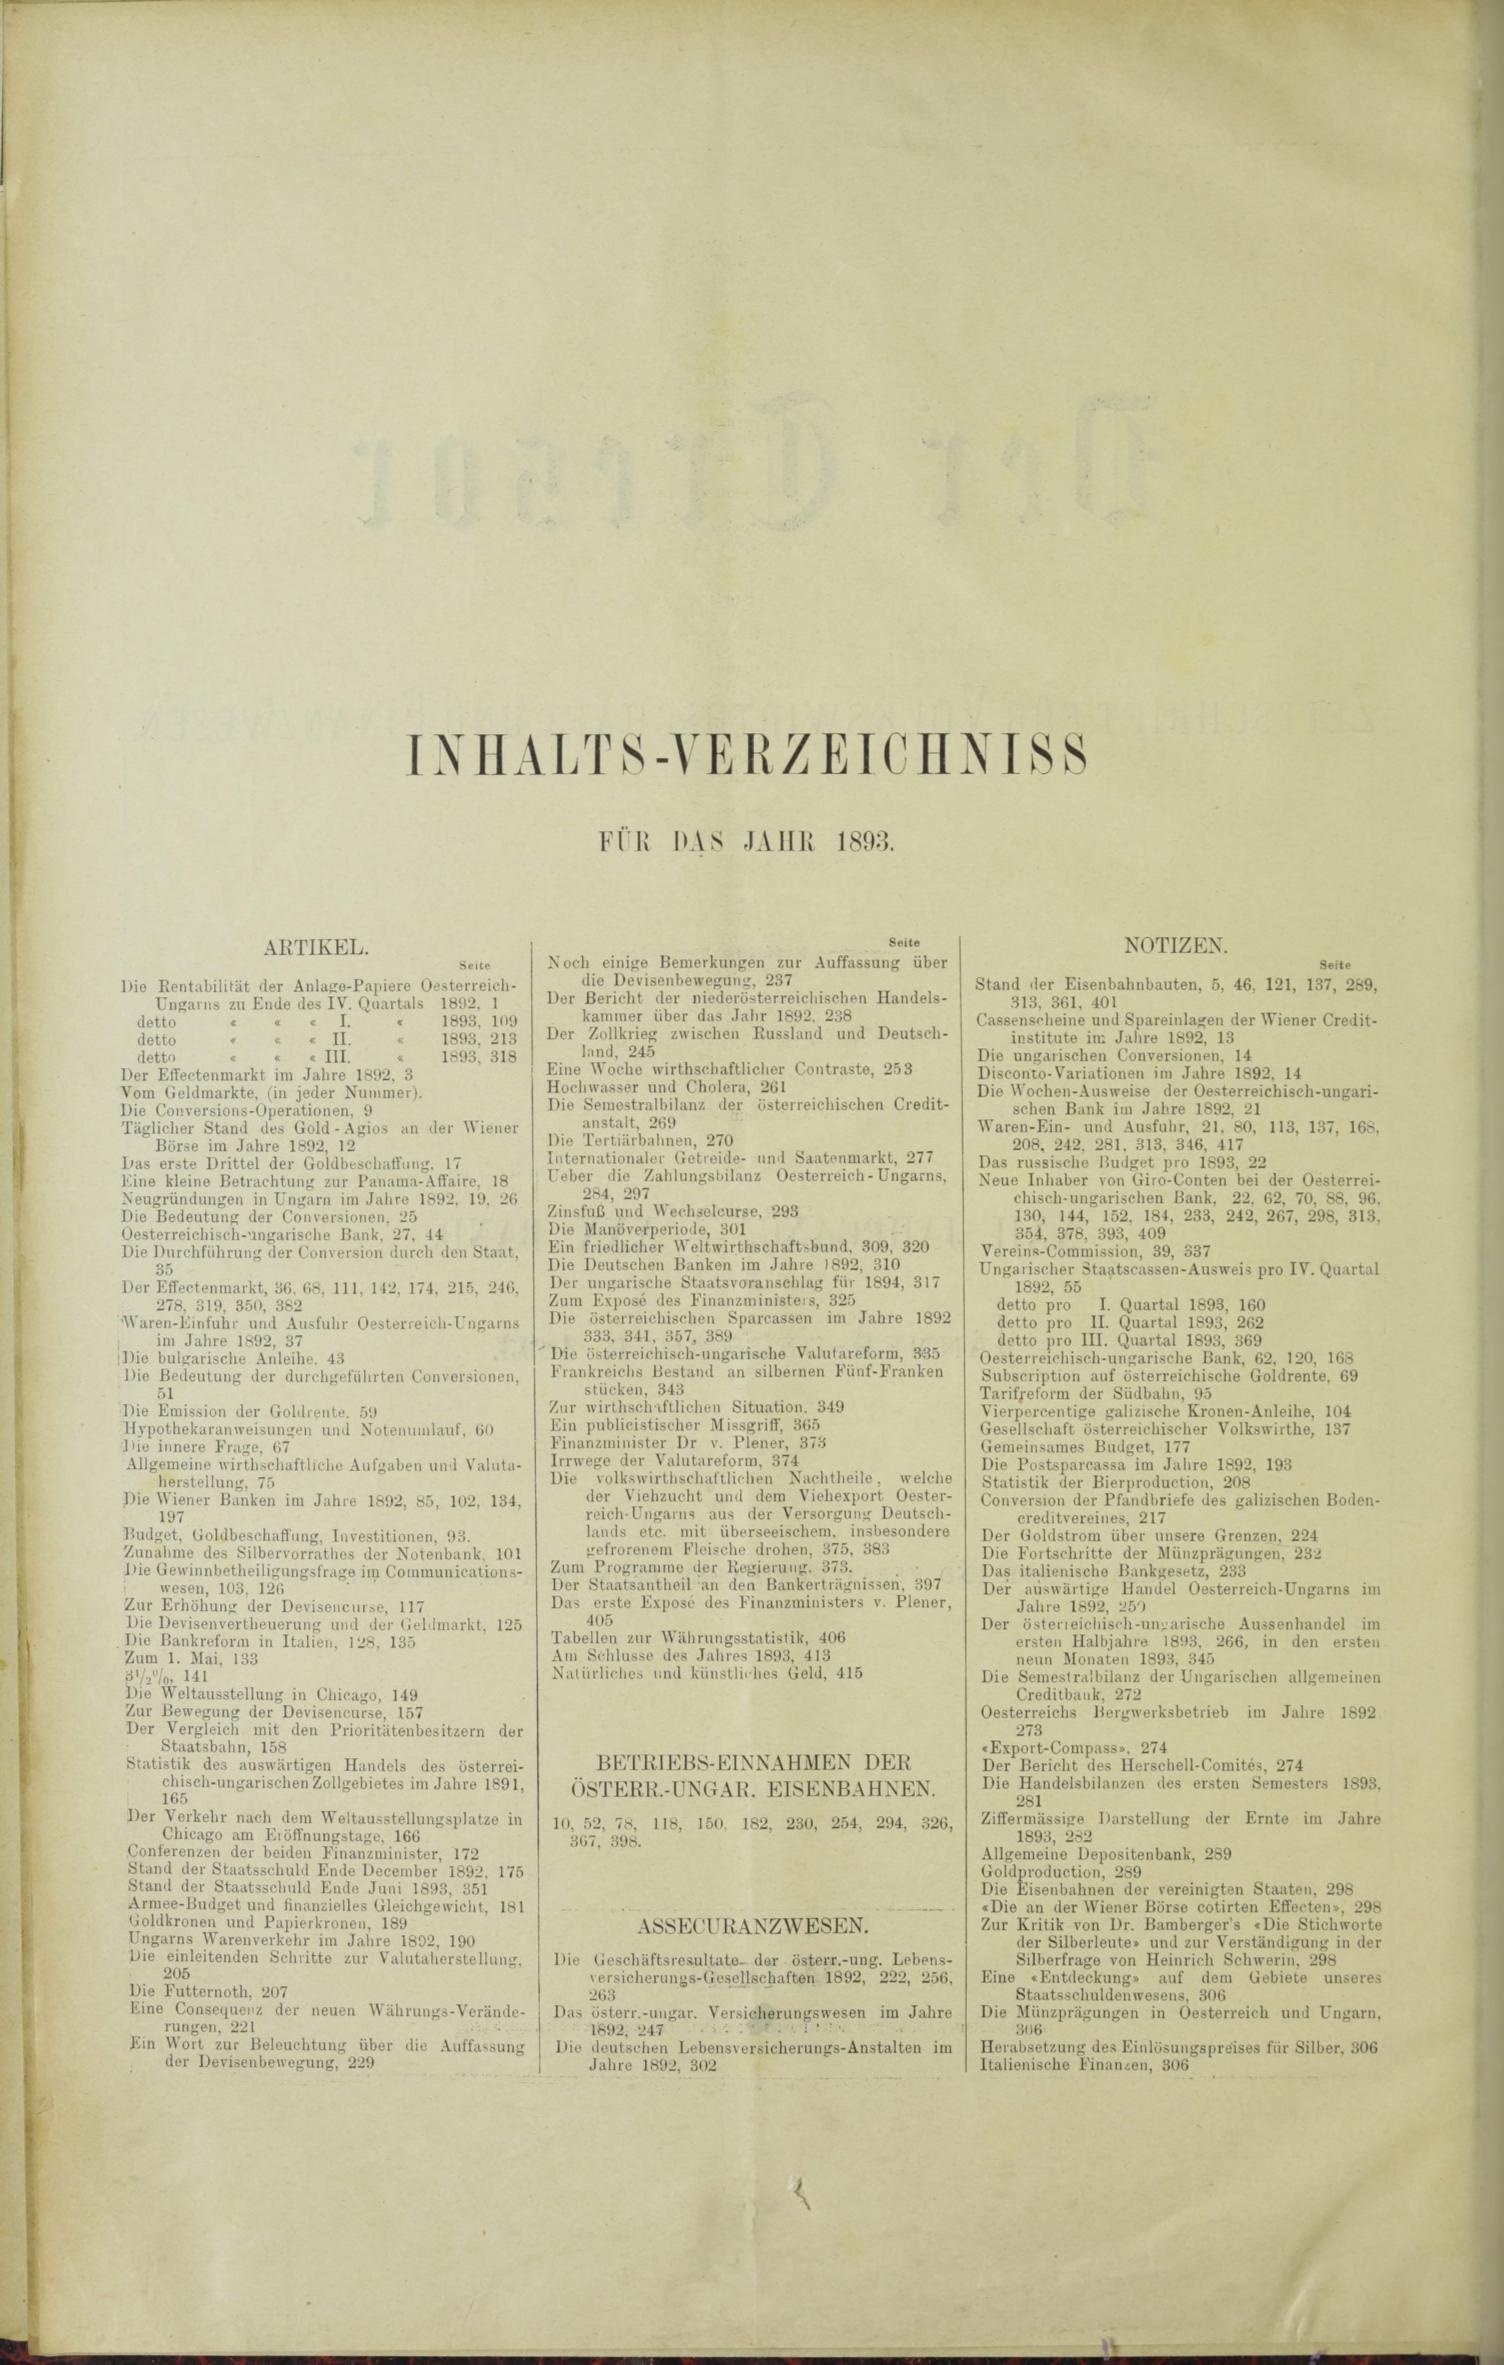 Der Tresor 27.04.1893 - Seite 10